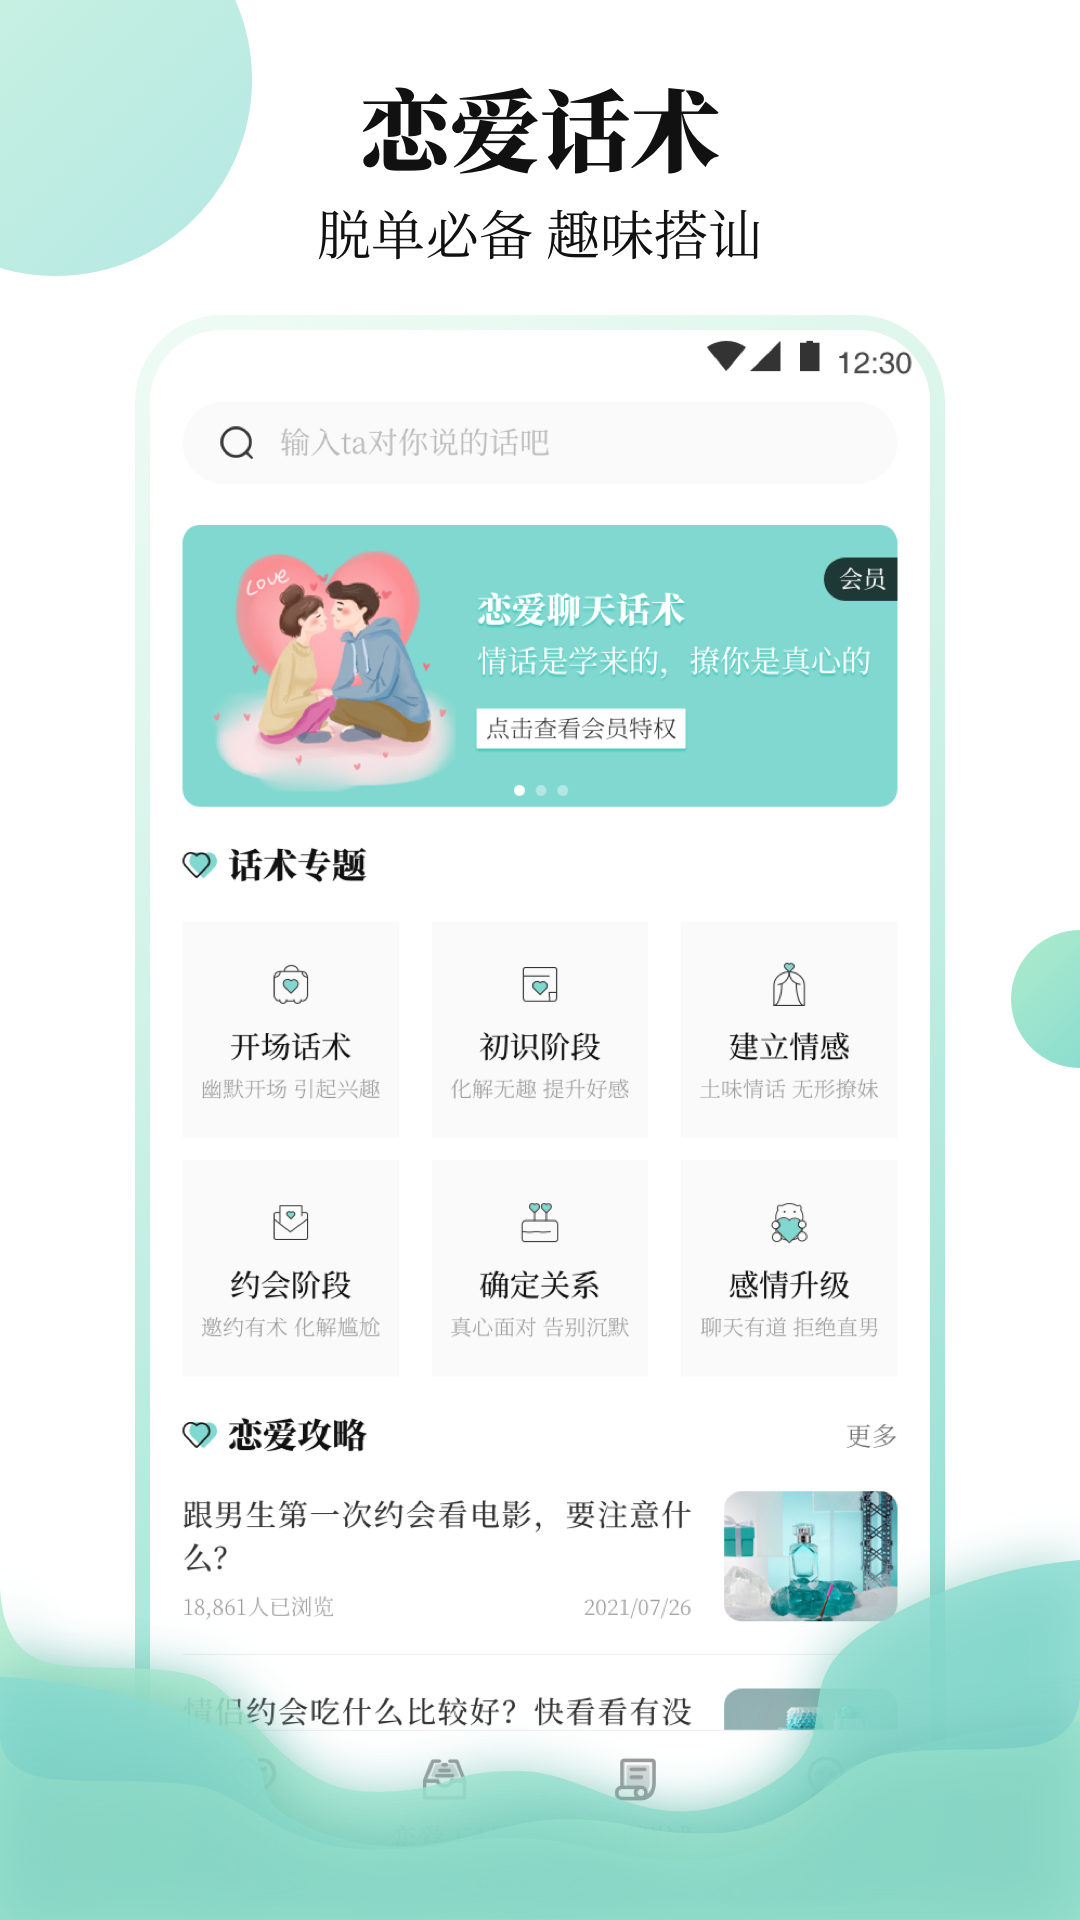 樱聊天恋爱物语App最新截图